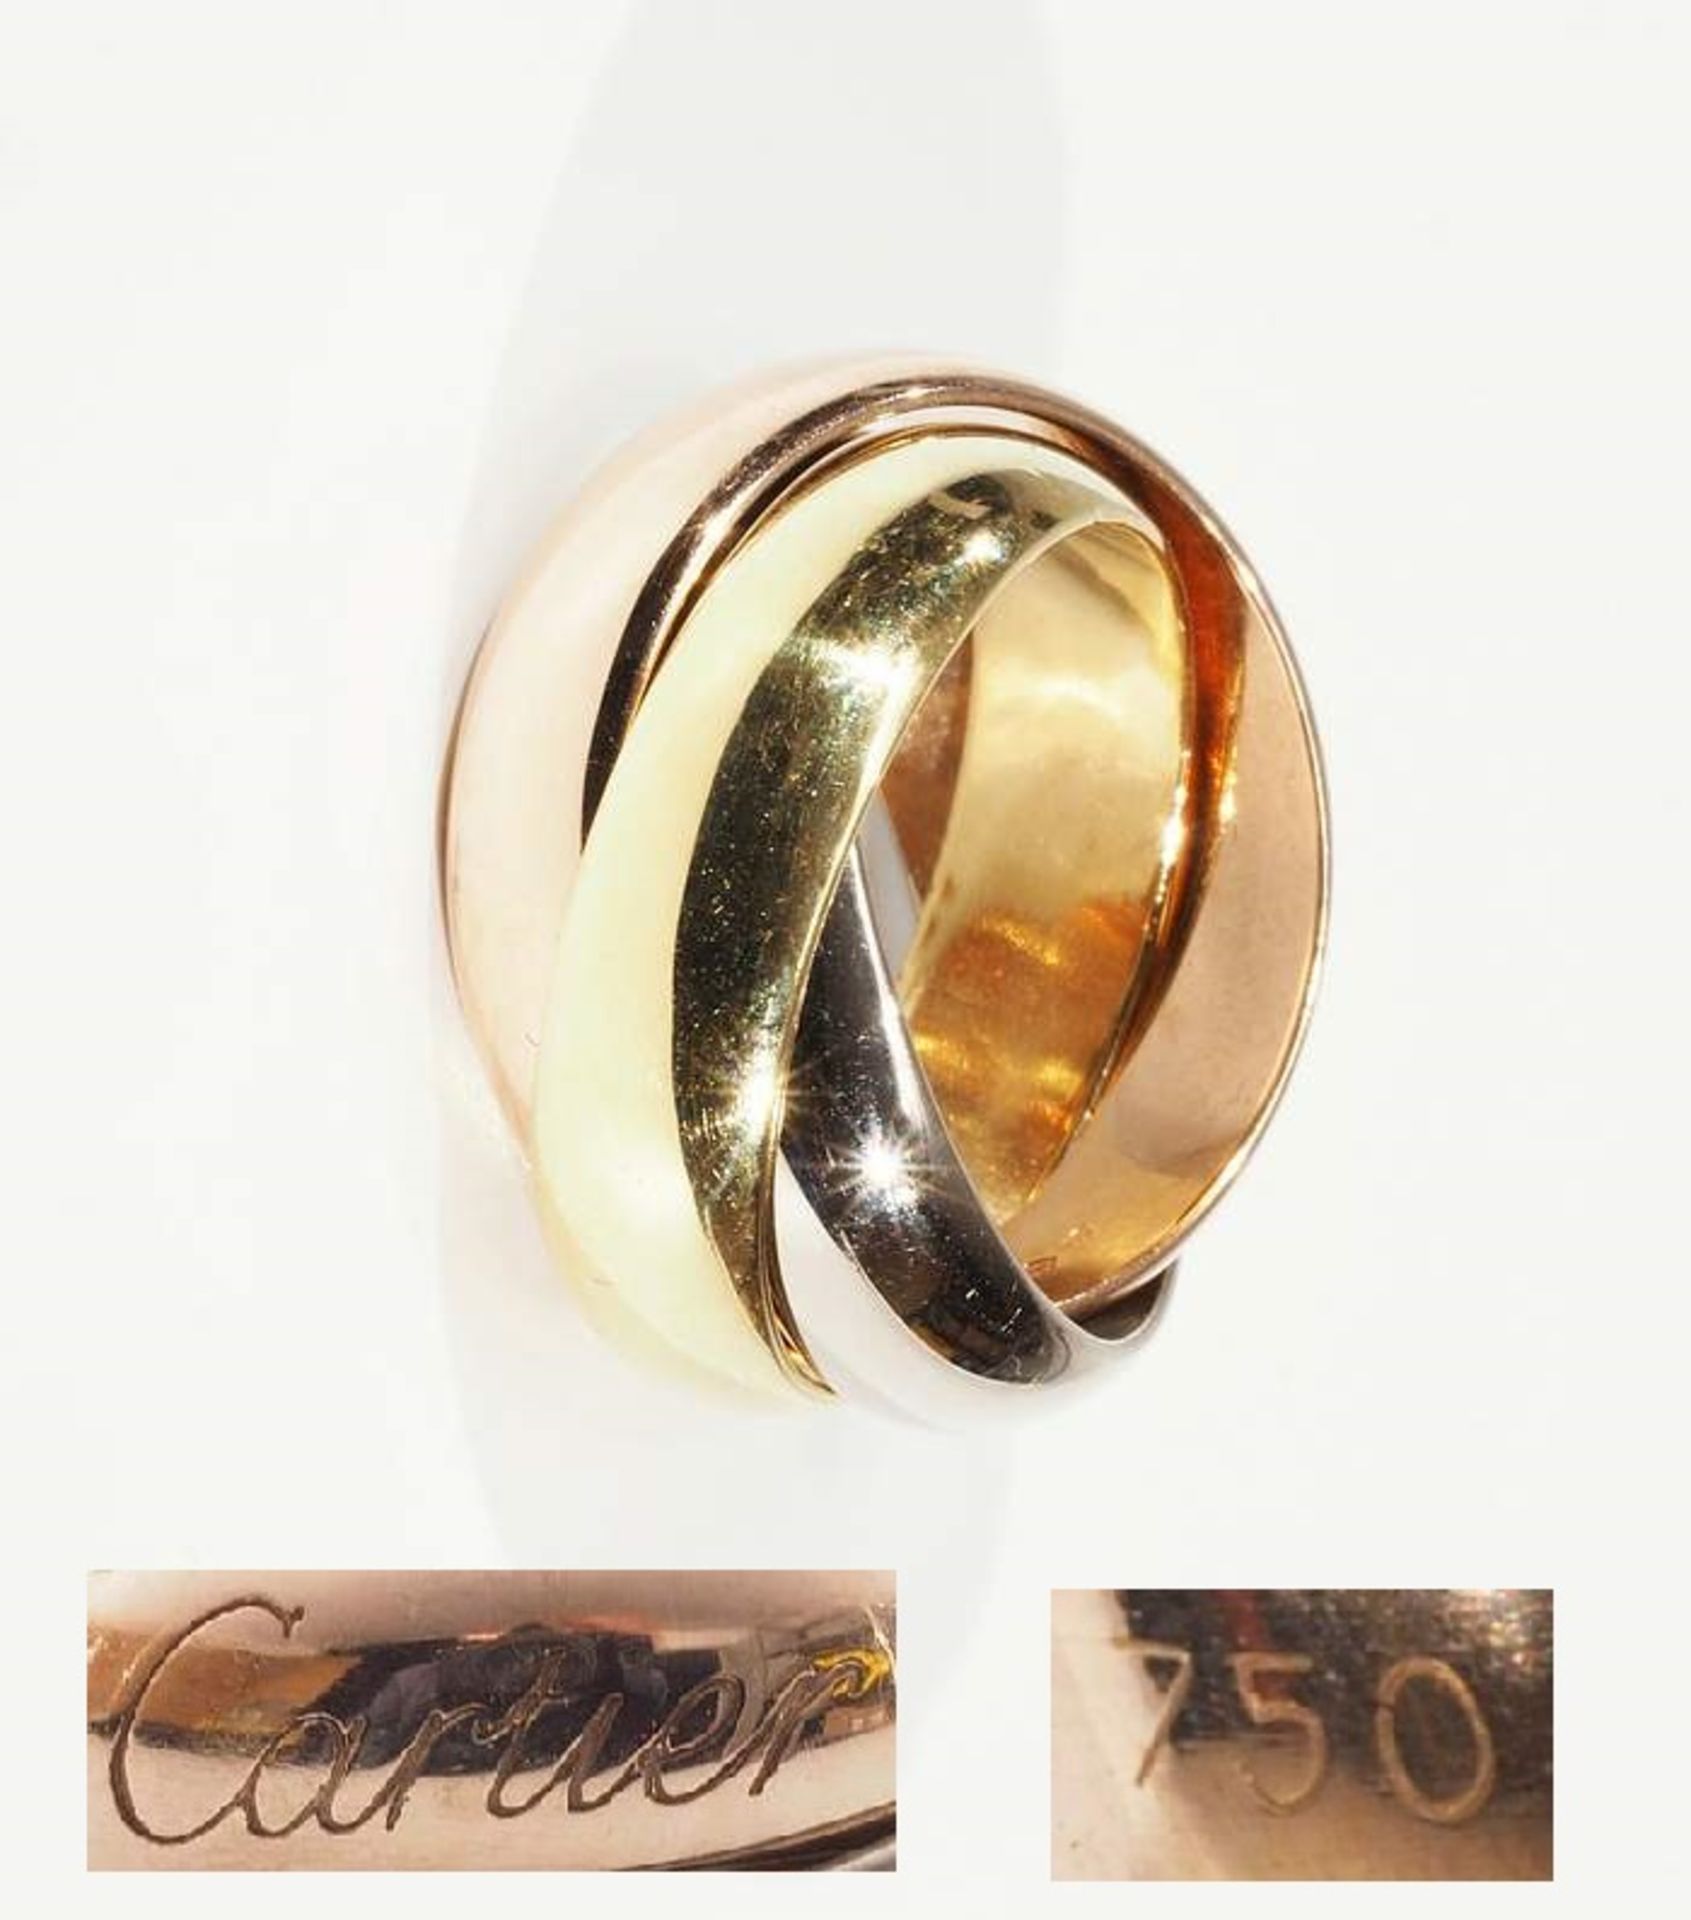 CARTIER-Ring "Trinity". 750er Gelb-, Weiß- und Rotgold. Ringgröße 45, Breite pro Ring ca. 5,1 mm